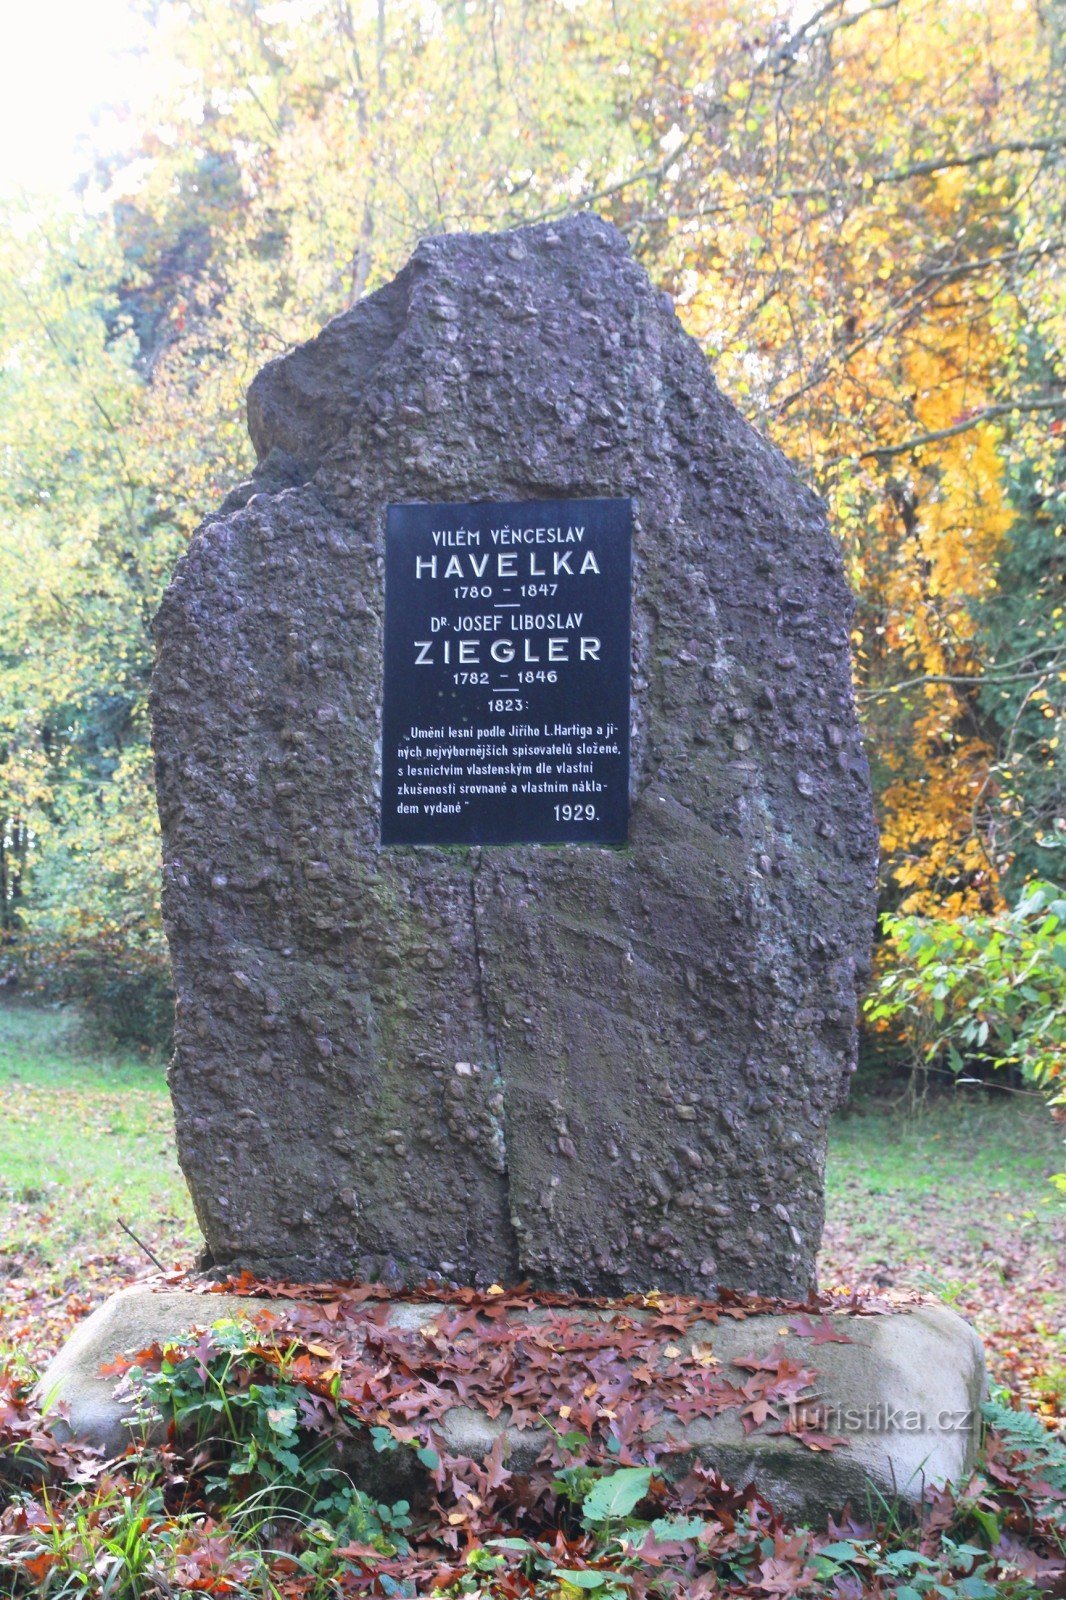 Spomenik VV Havelki in JL Zieglerju